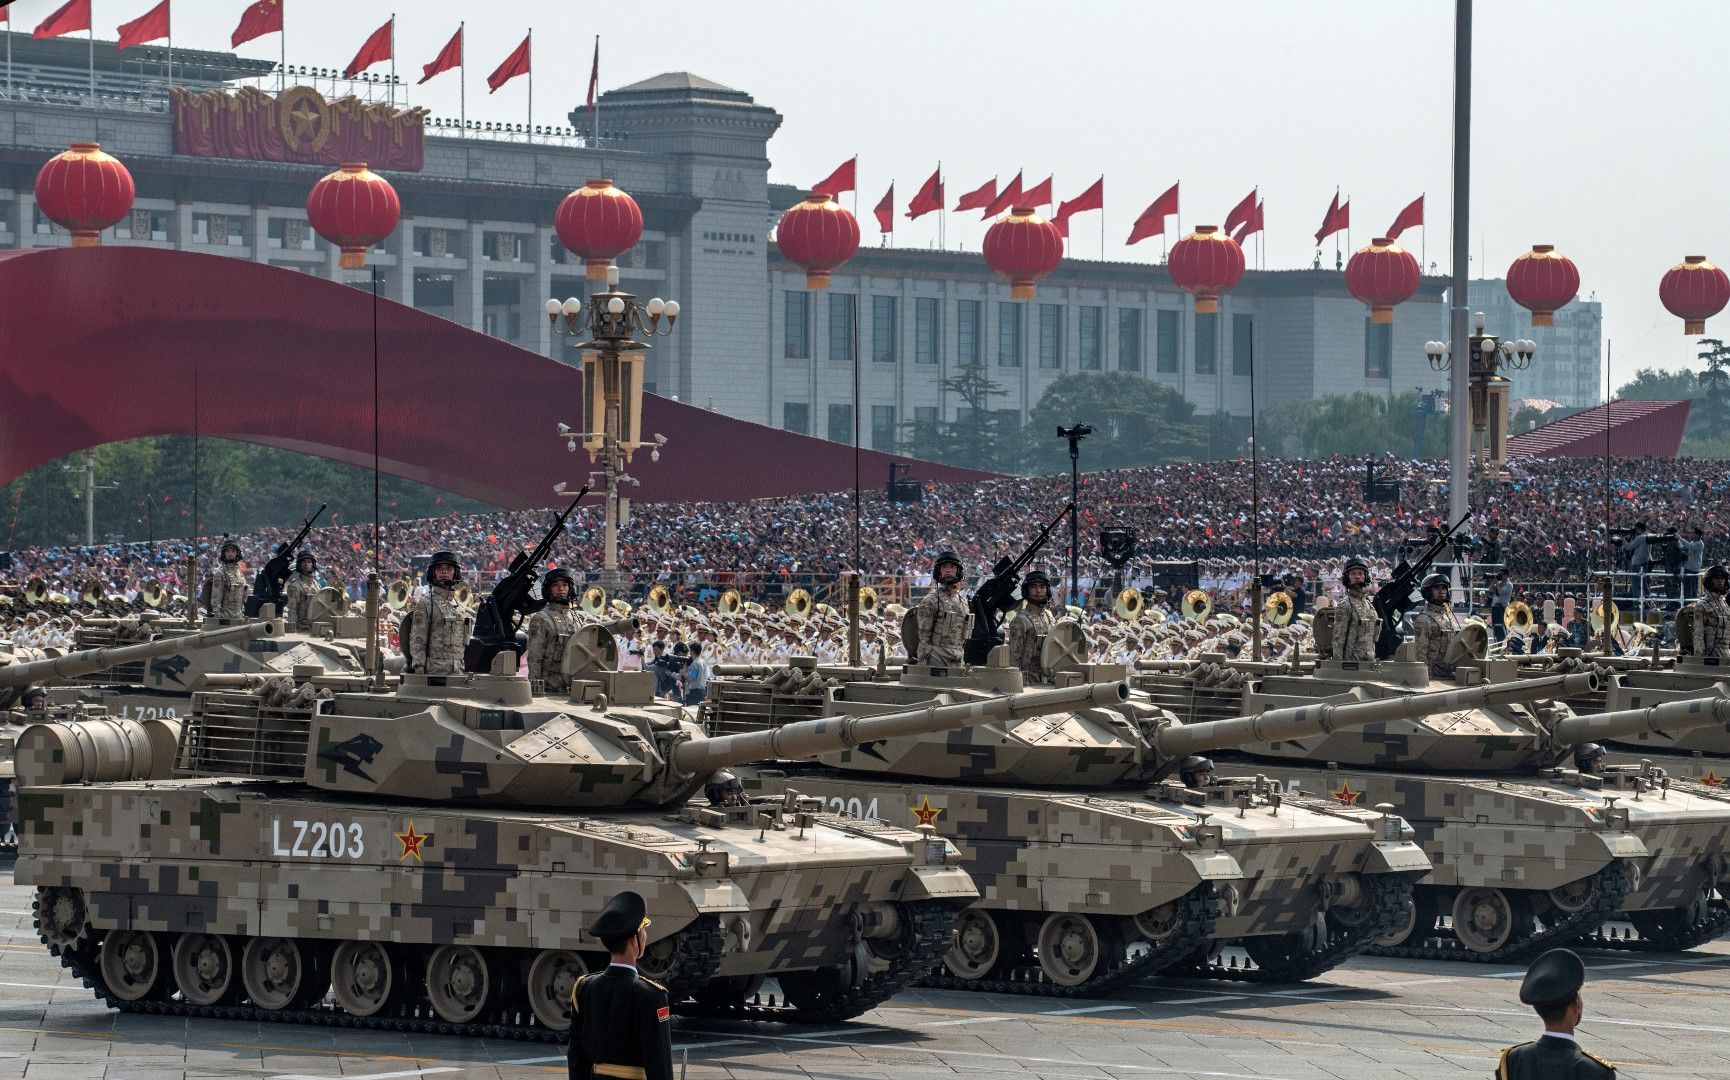 Войници преминават върху танкове на площад Тянанмън в Пекин в парада по случай 70-годишнината от основаването на Китайската народна република (1949 г.), 1 октомври 2019 г.